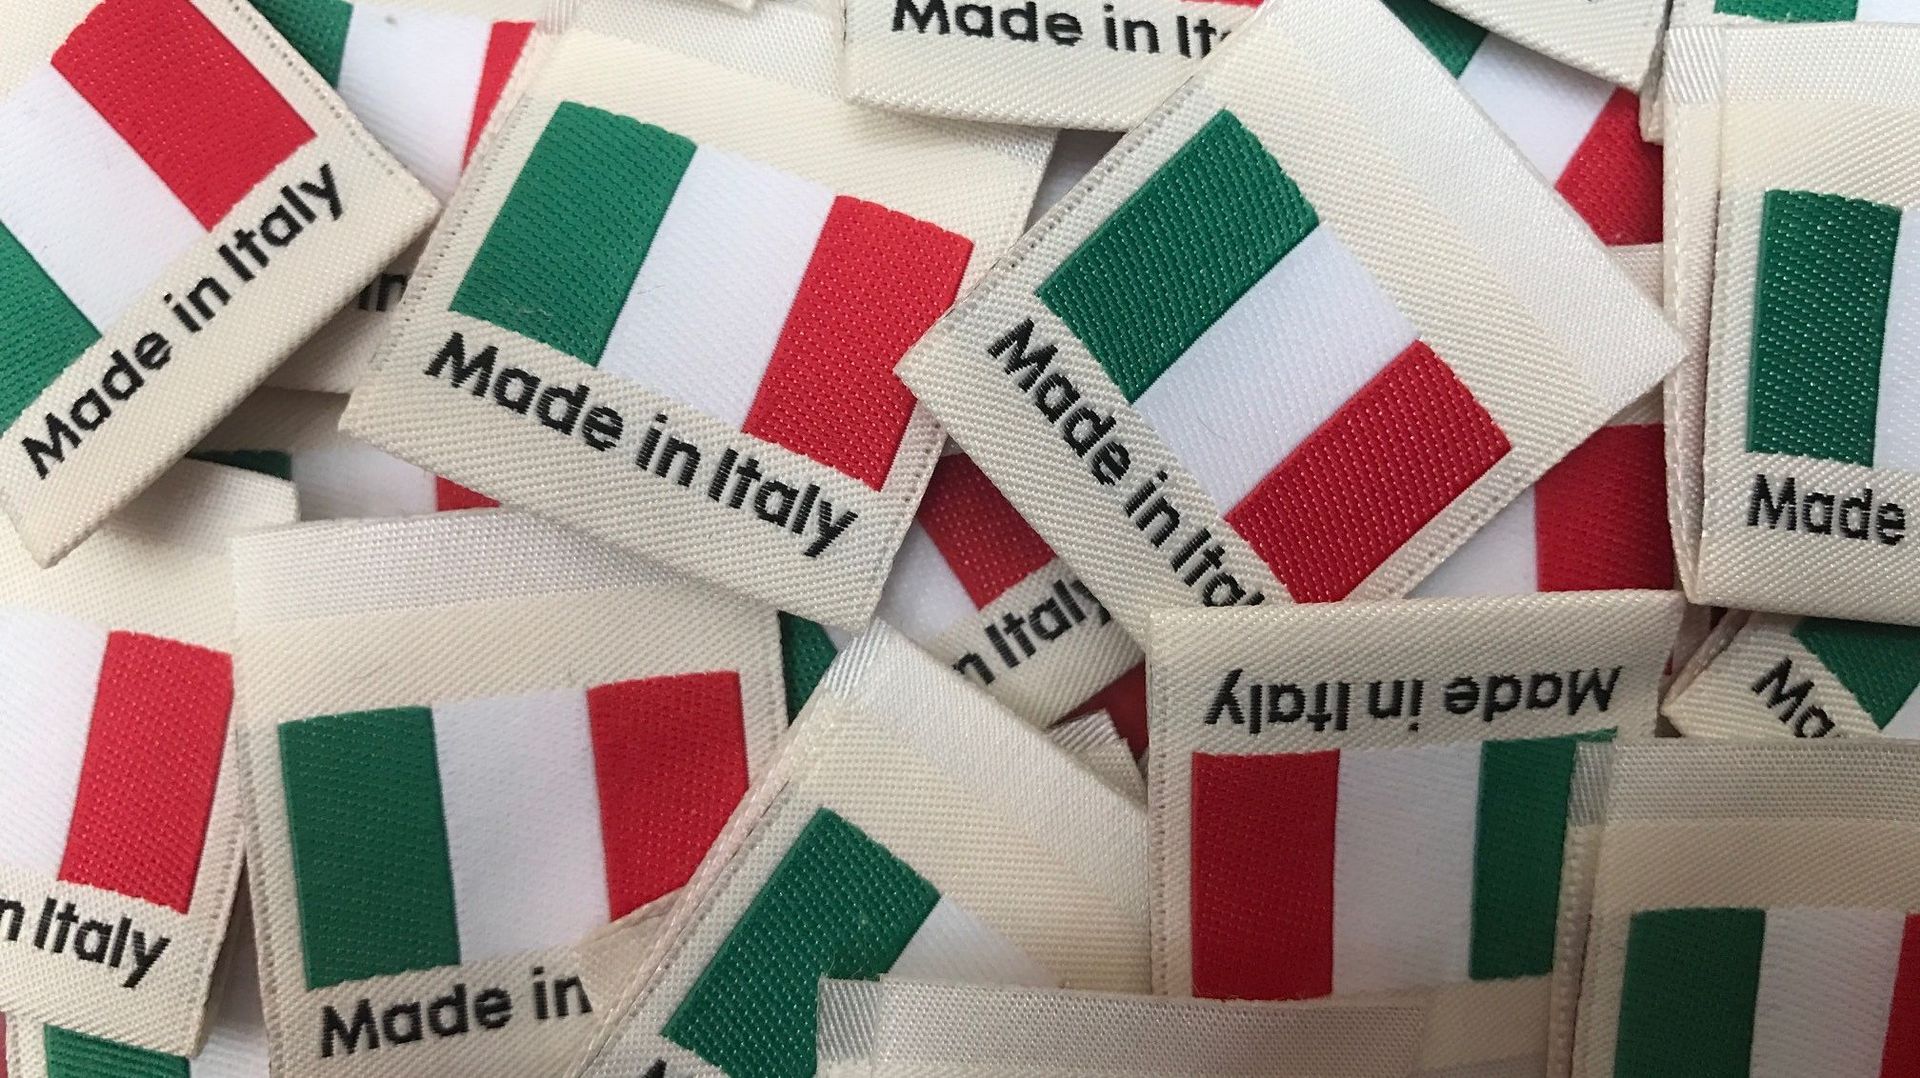 Etiquettes "Made in Italy" à coudre dans les vêtements